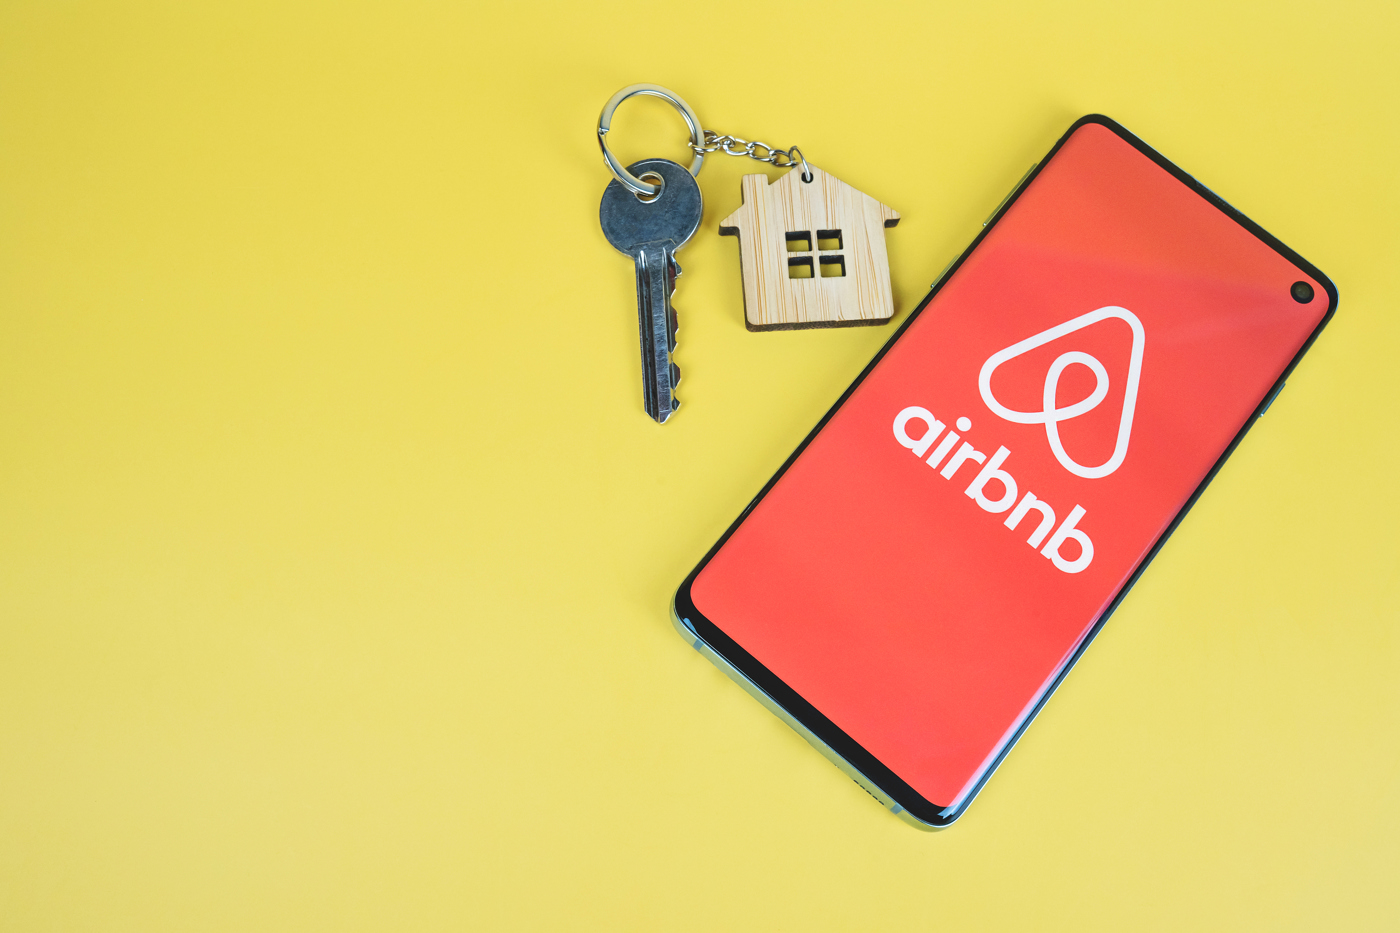 Airbnb stock, ABNB stock, Airbnb stock news, ABNB stock price